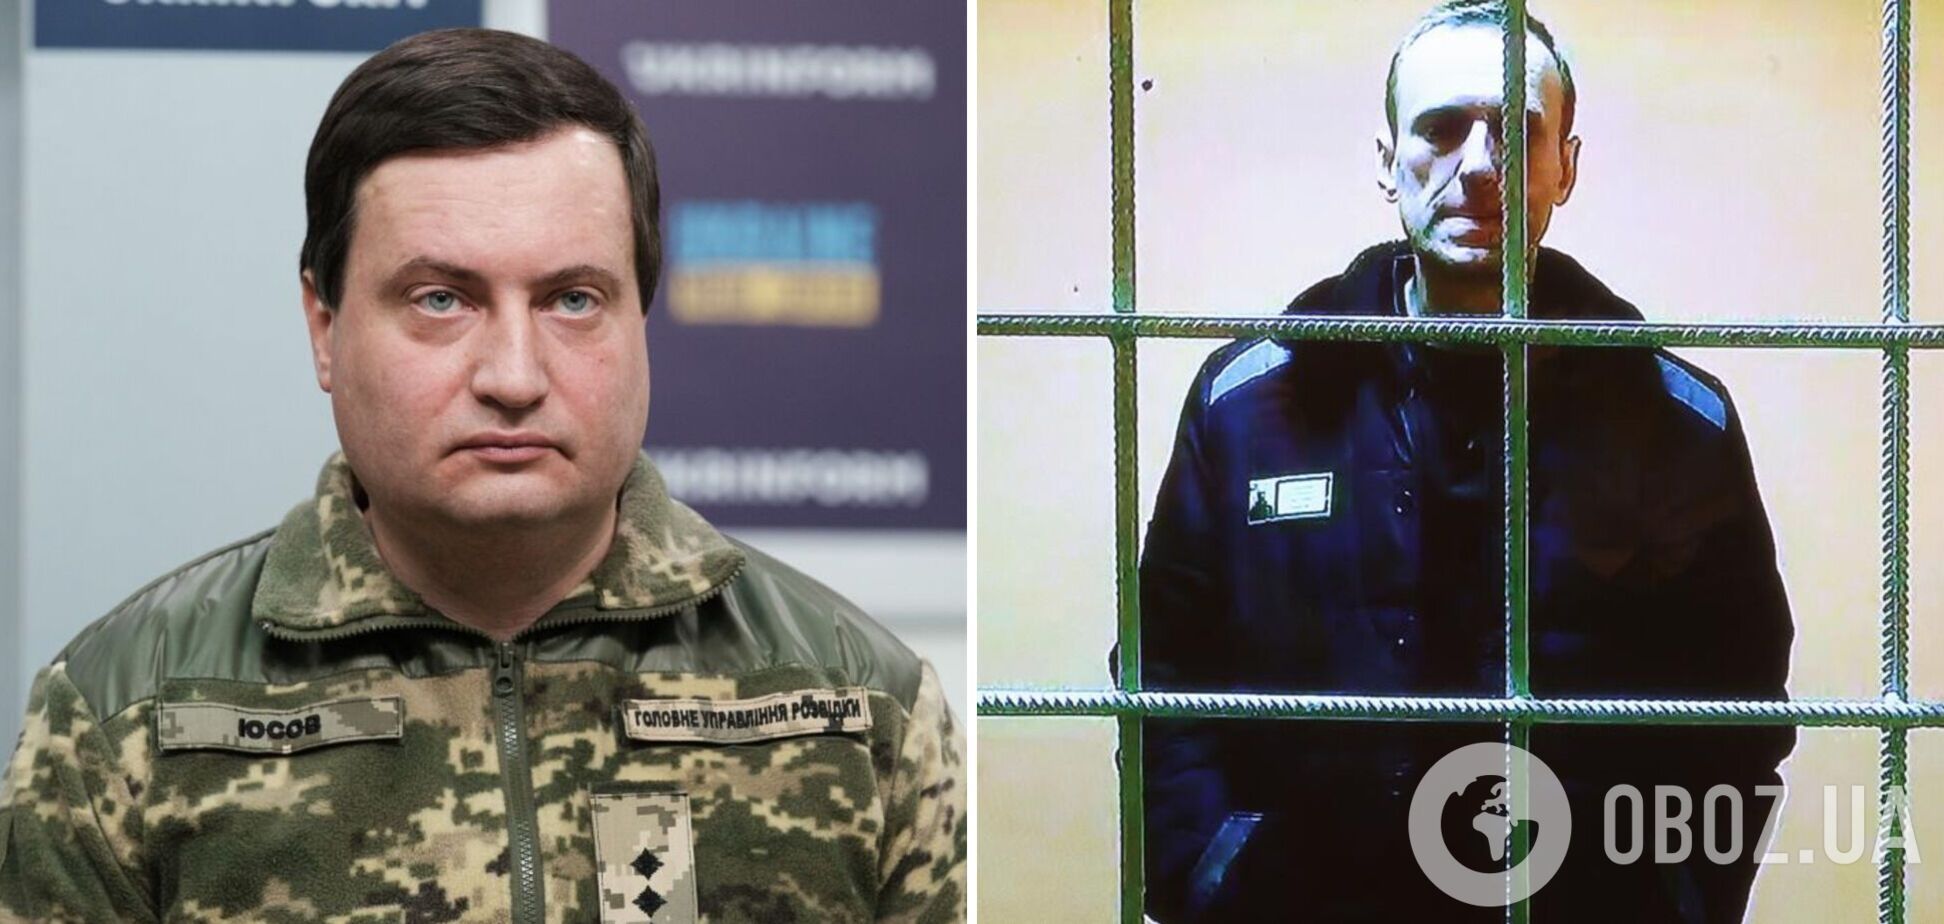 Юсов намекнул, что Россия не будет останавливаться на убийстве Навального